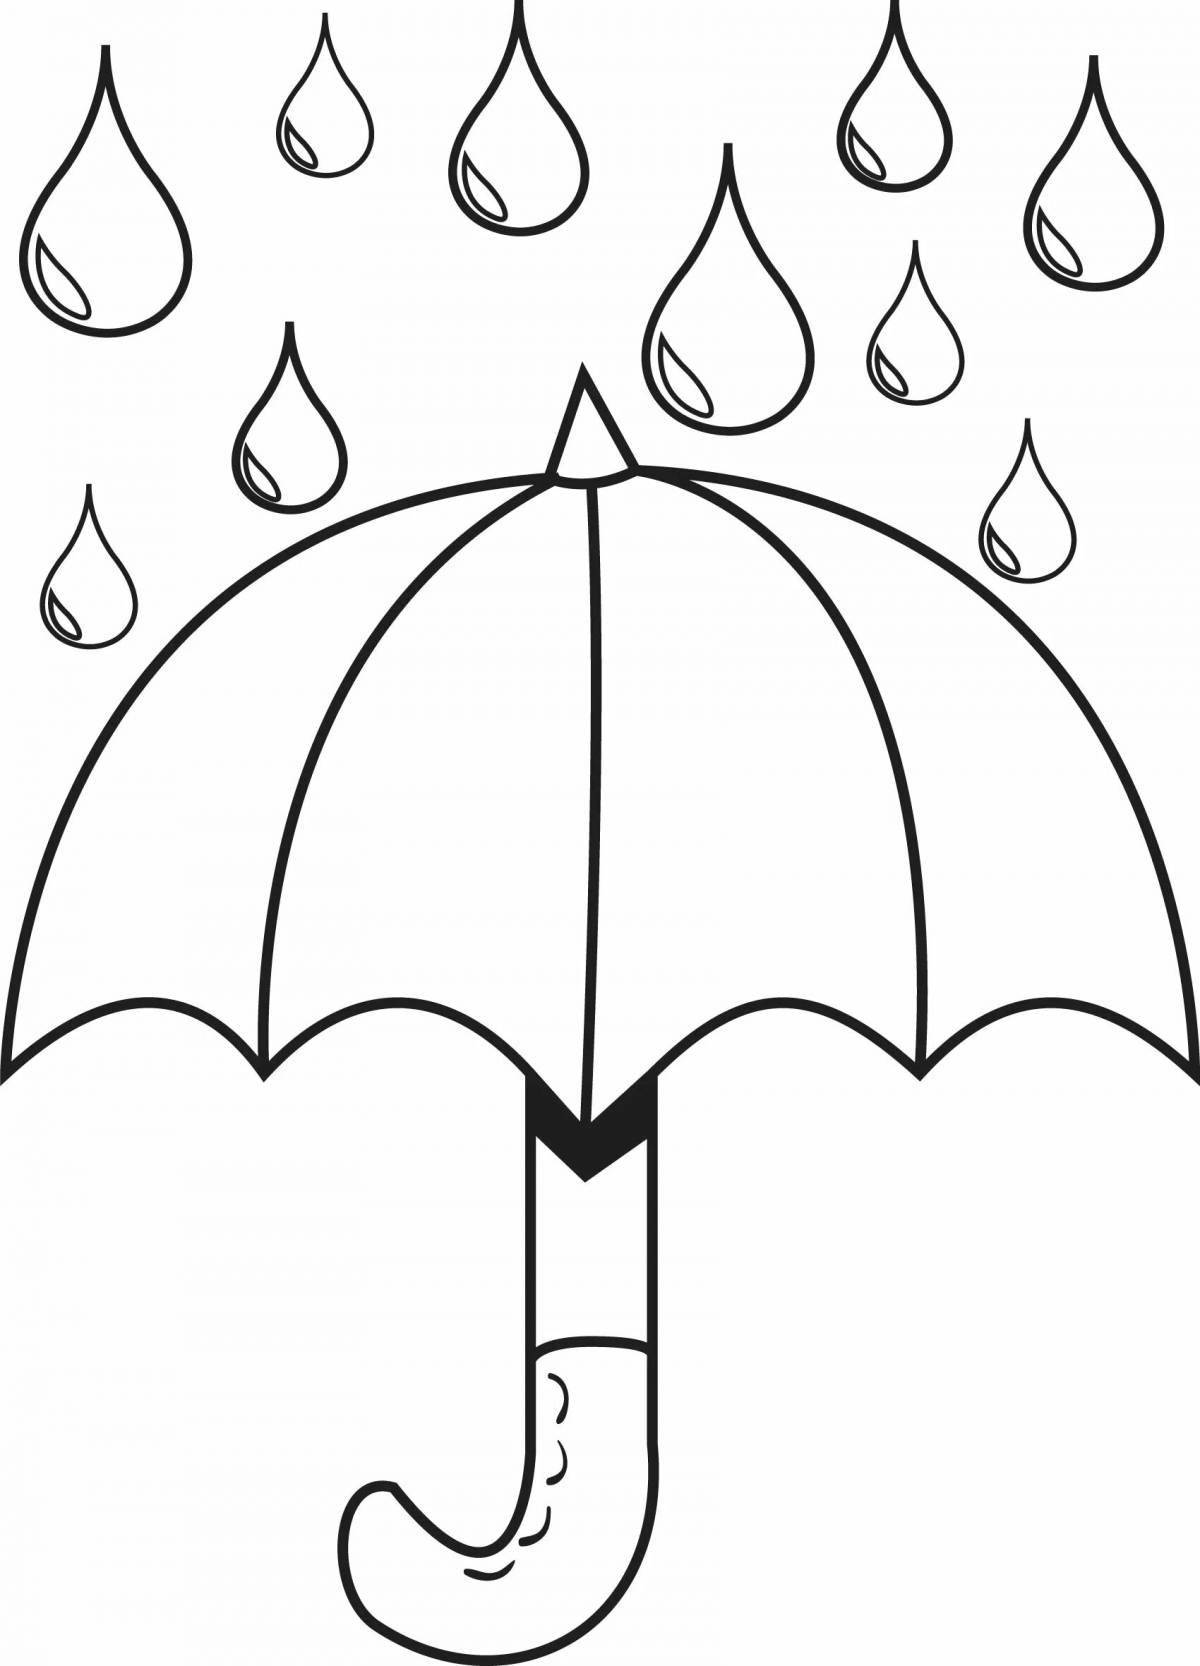 Увлекательная раскраска зонтик для детей 4-5 лет